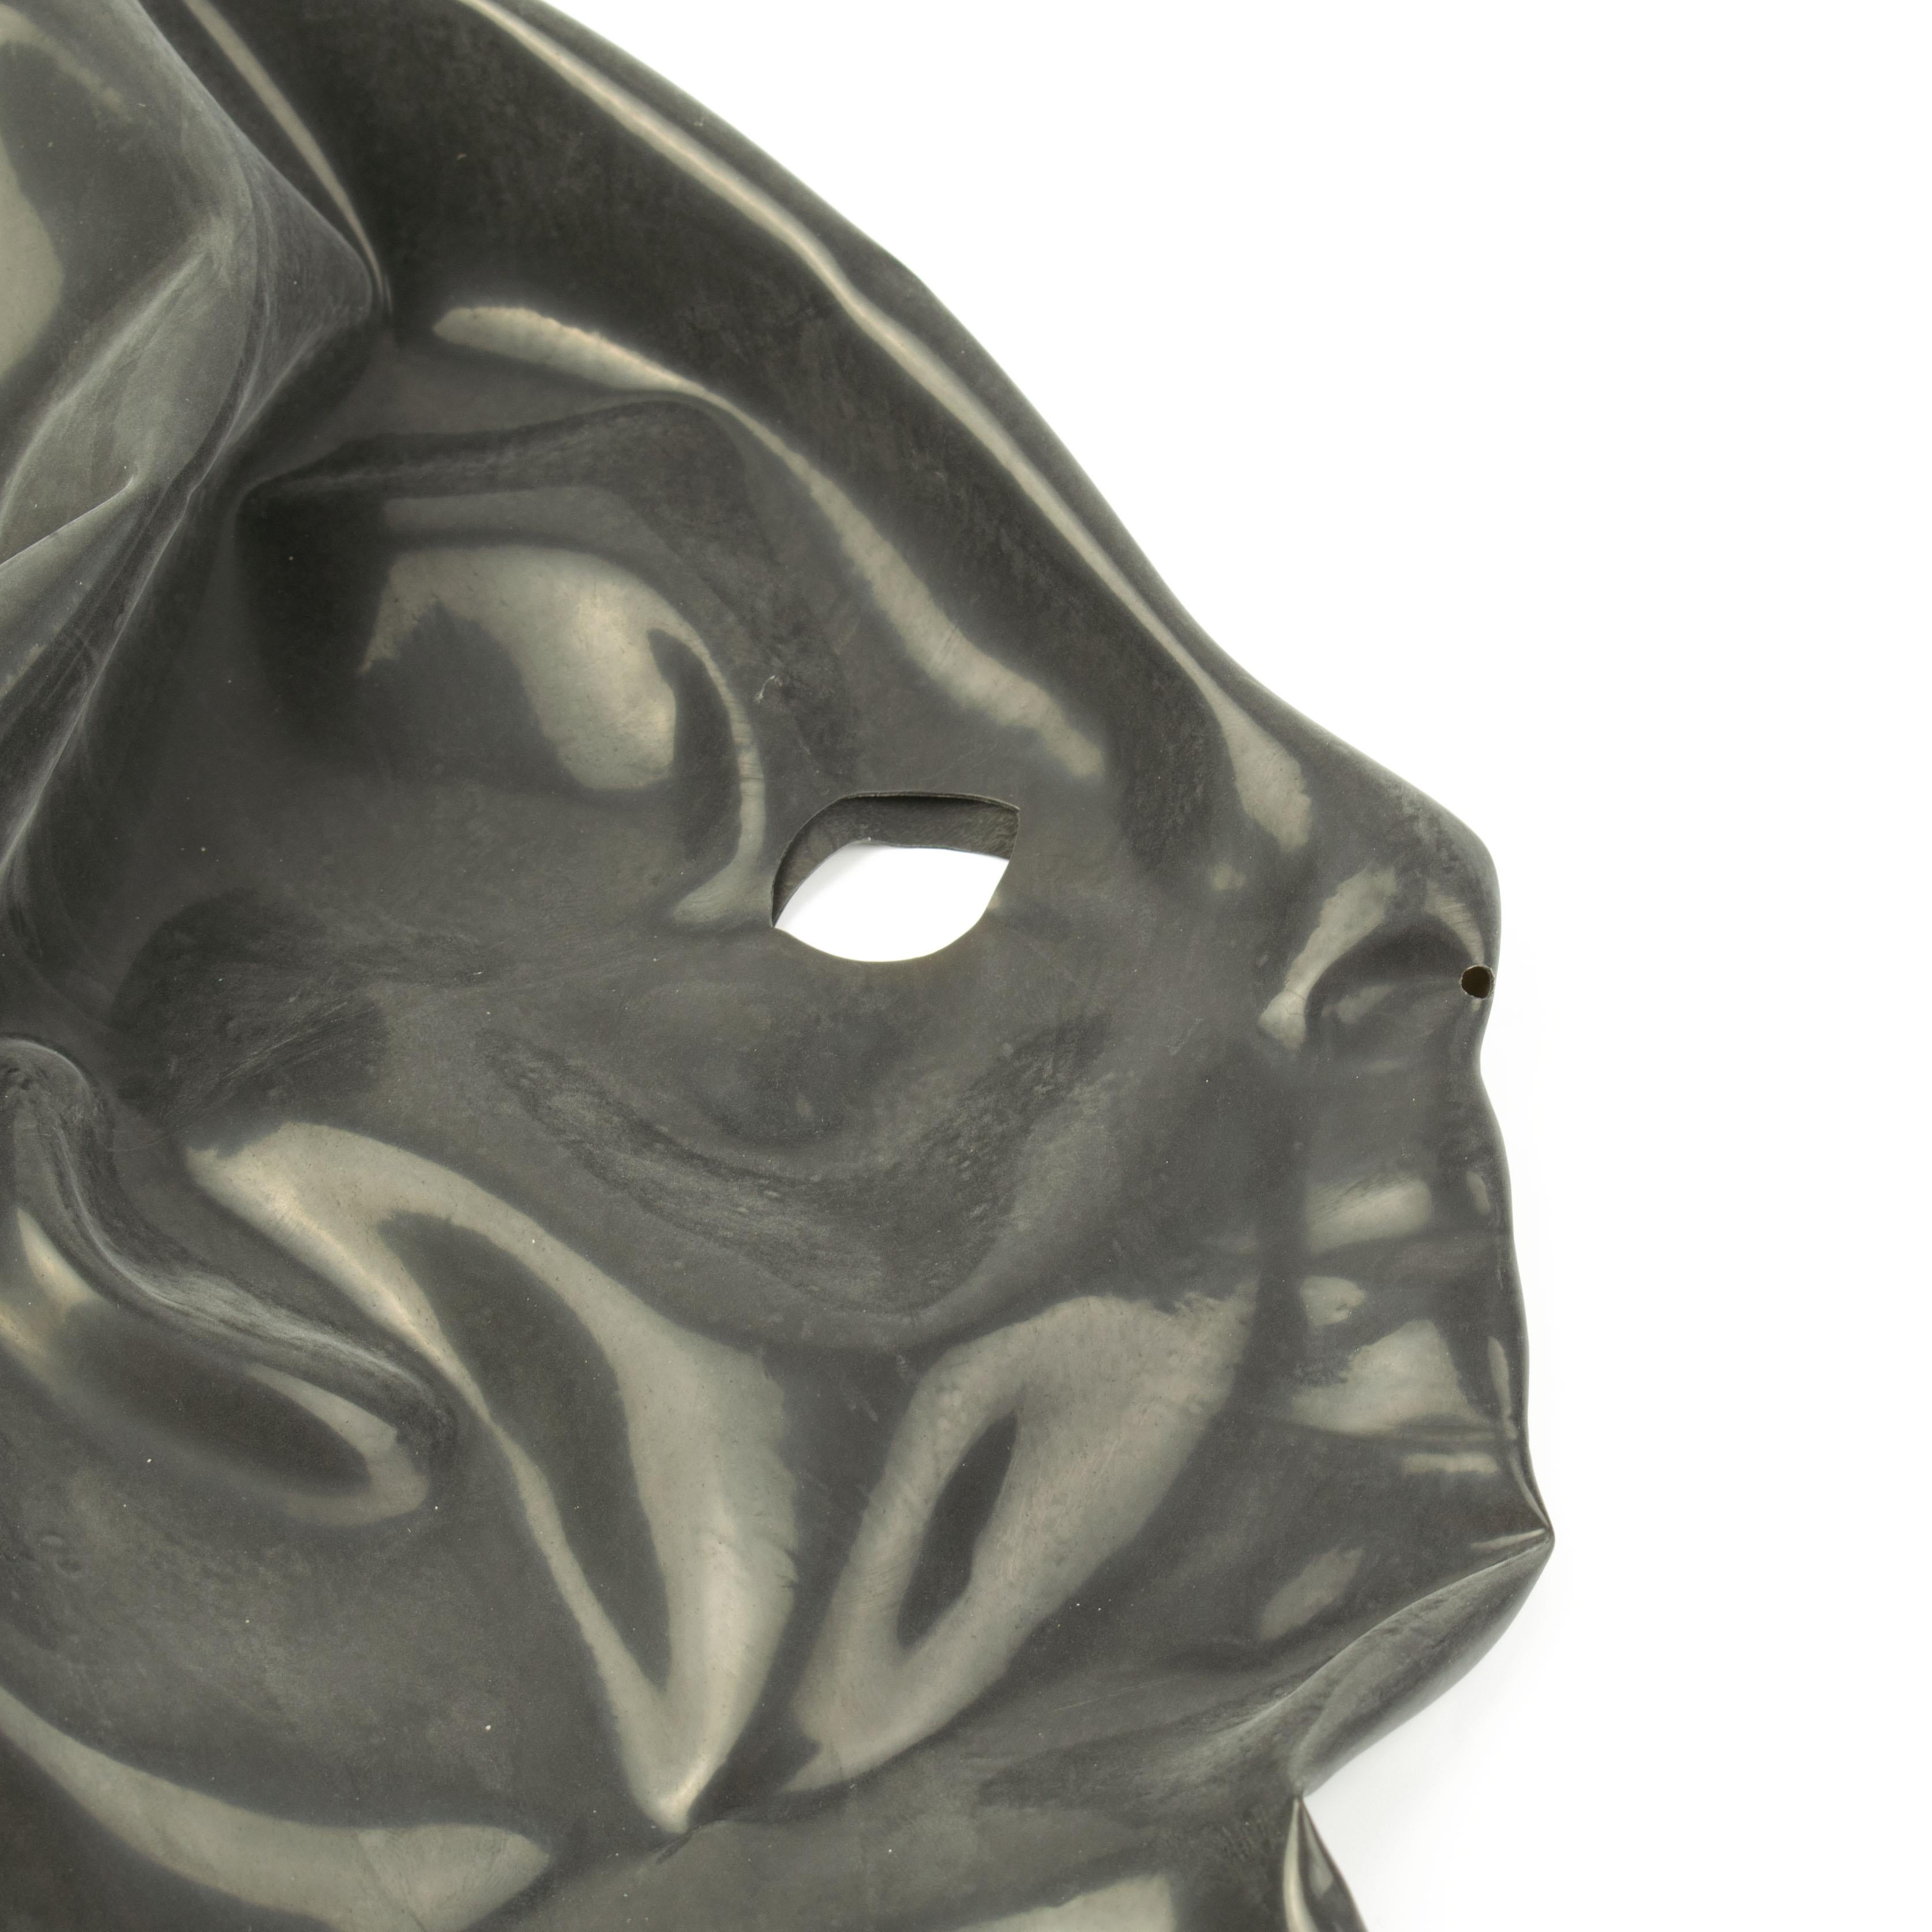 Rubberfashion Latex Maske Damen anatomisch - Latexmaske Haube mit Öffnungen für Augen und Nase für Frauen